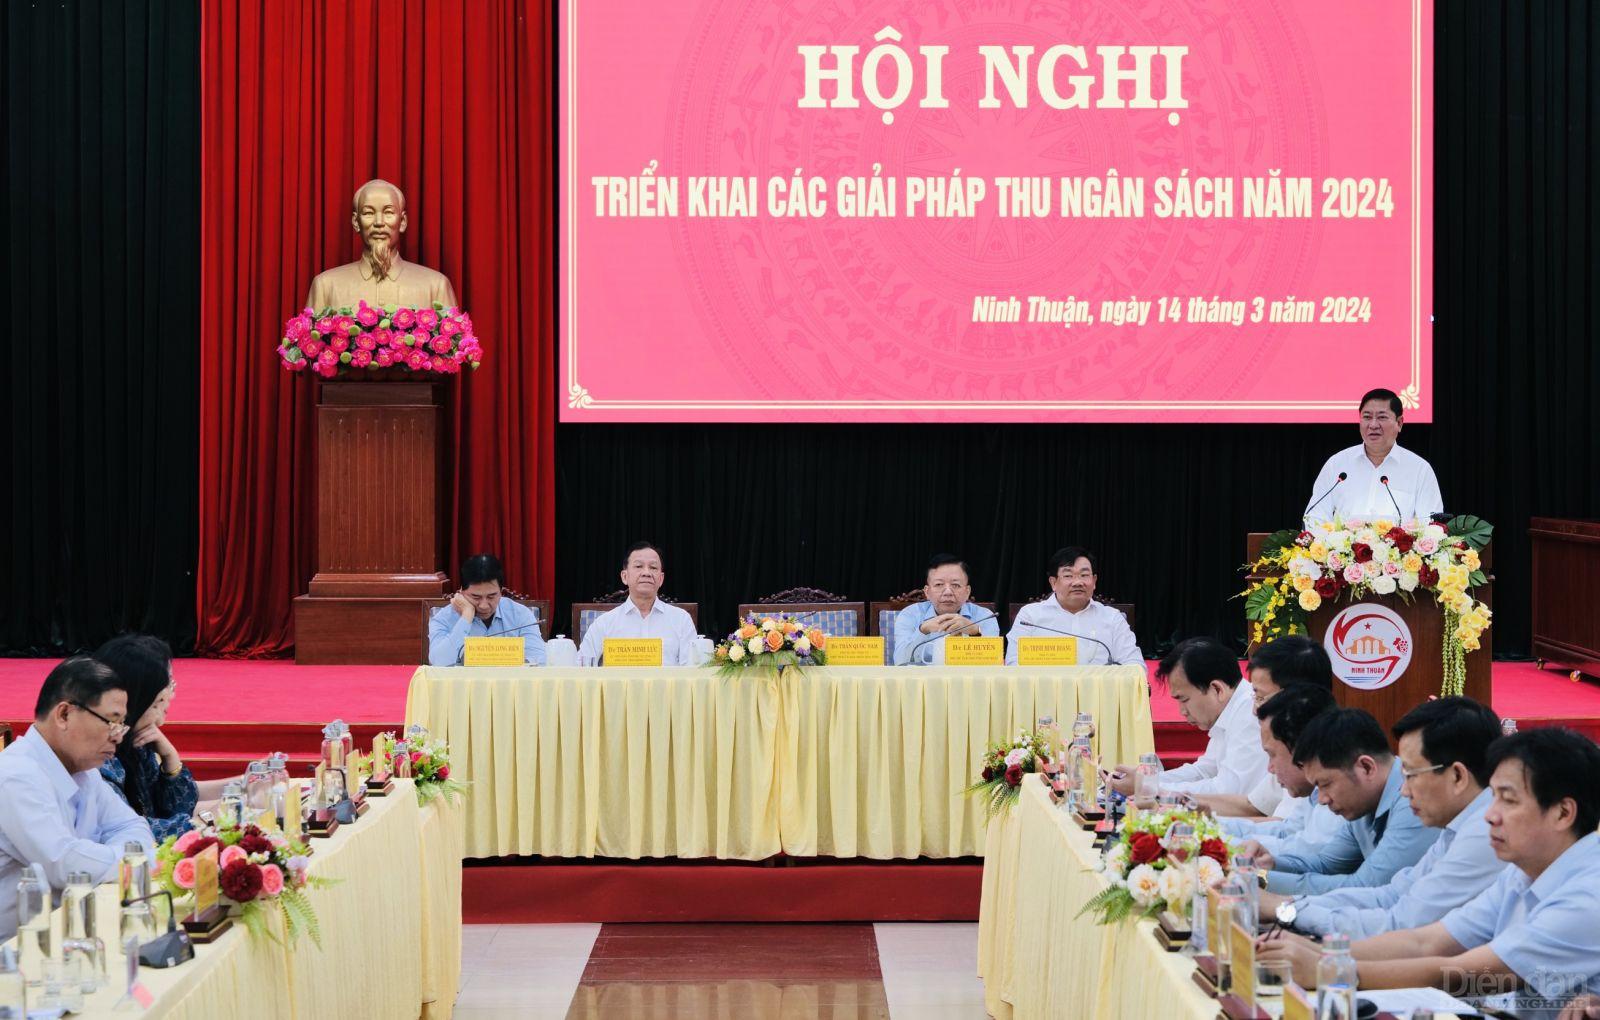 Đồng chí Trần Quốc Nam, Phó Bí thư Tỉnh uỷ, Chủ tịch UBND tỉnh chủ trì hội nghị triển khai các giải pháp thu ngân sách năm 2024.